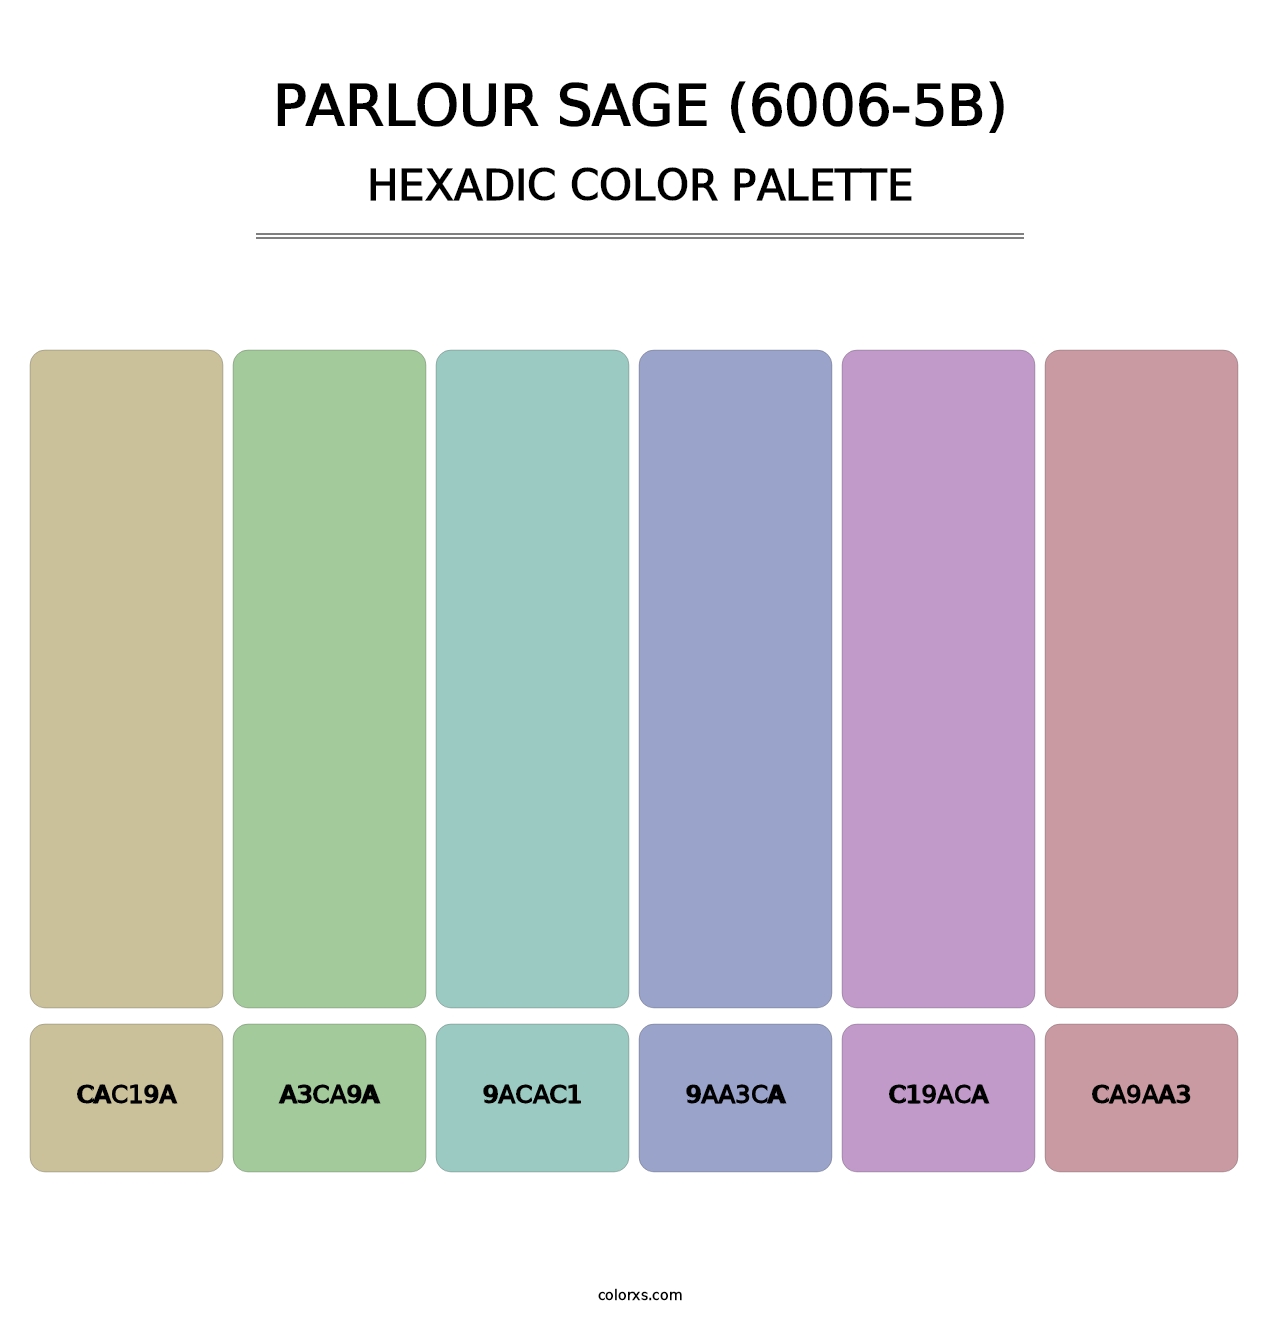 Parlour Sage (6006-5B) - Hexadic Color Palette